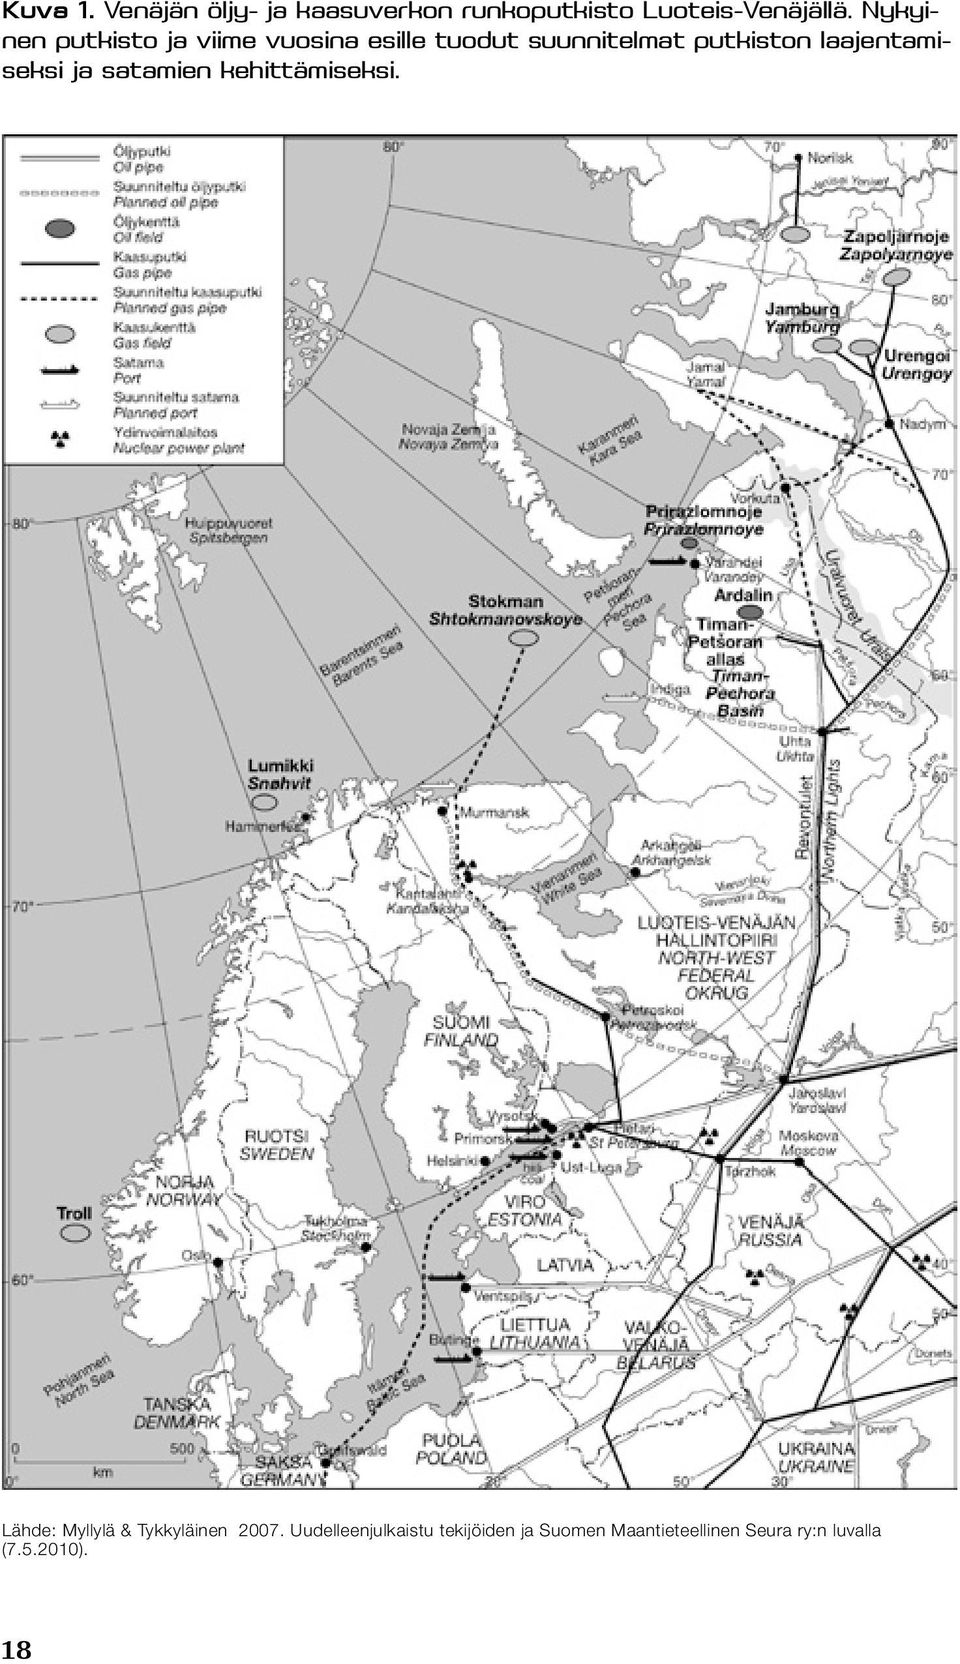 laajentamiseksi ja satamien kehittämiseksi. Lähde: Myllylä & Tykkyläinen 2007.